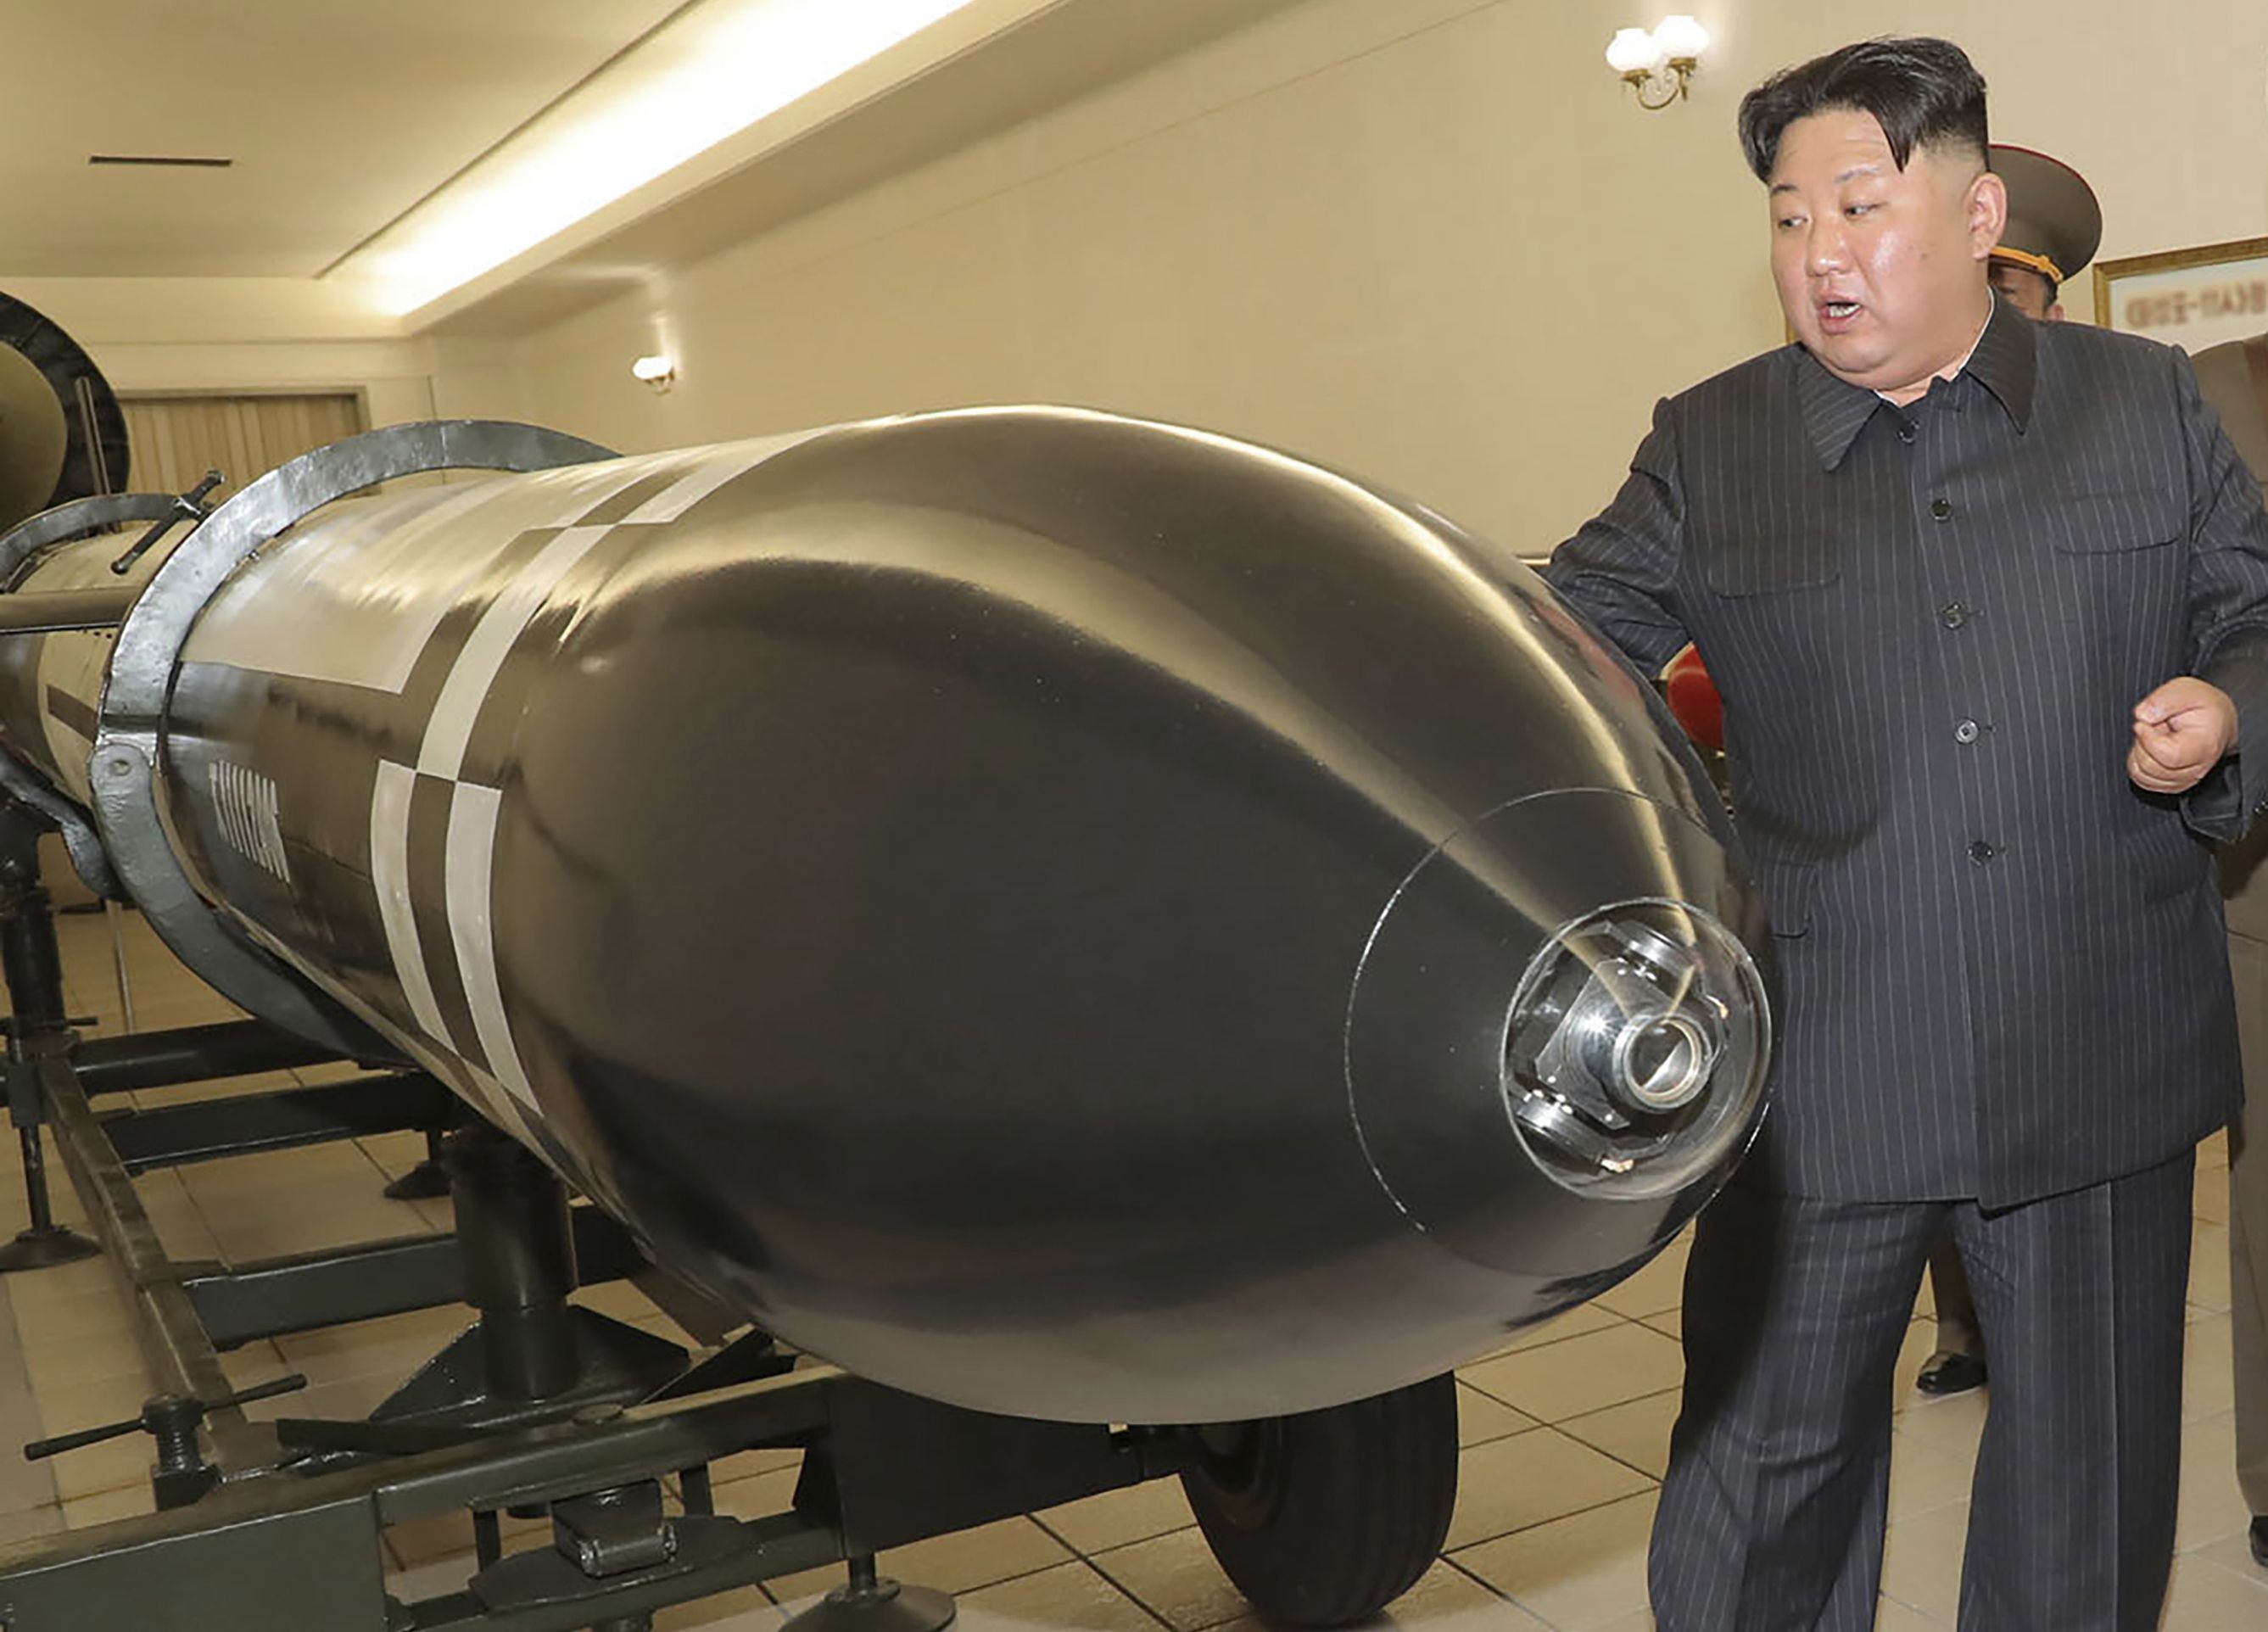 Corea del Norte reafirmó su postura como potencia nuclear mundial a pesar de los pedidos del G7 - Infobae